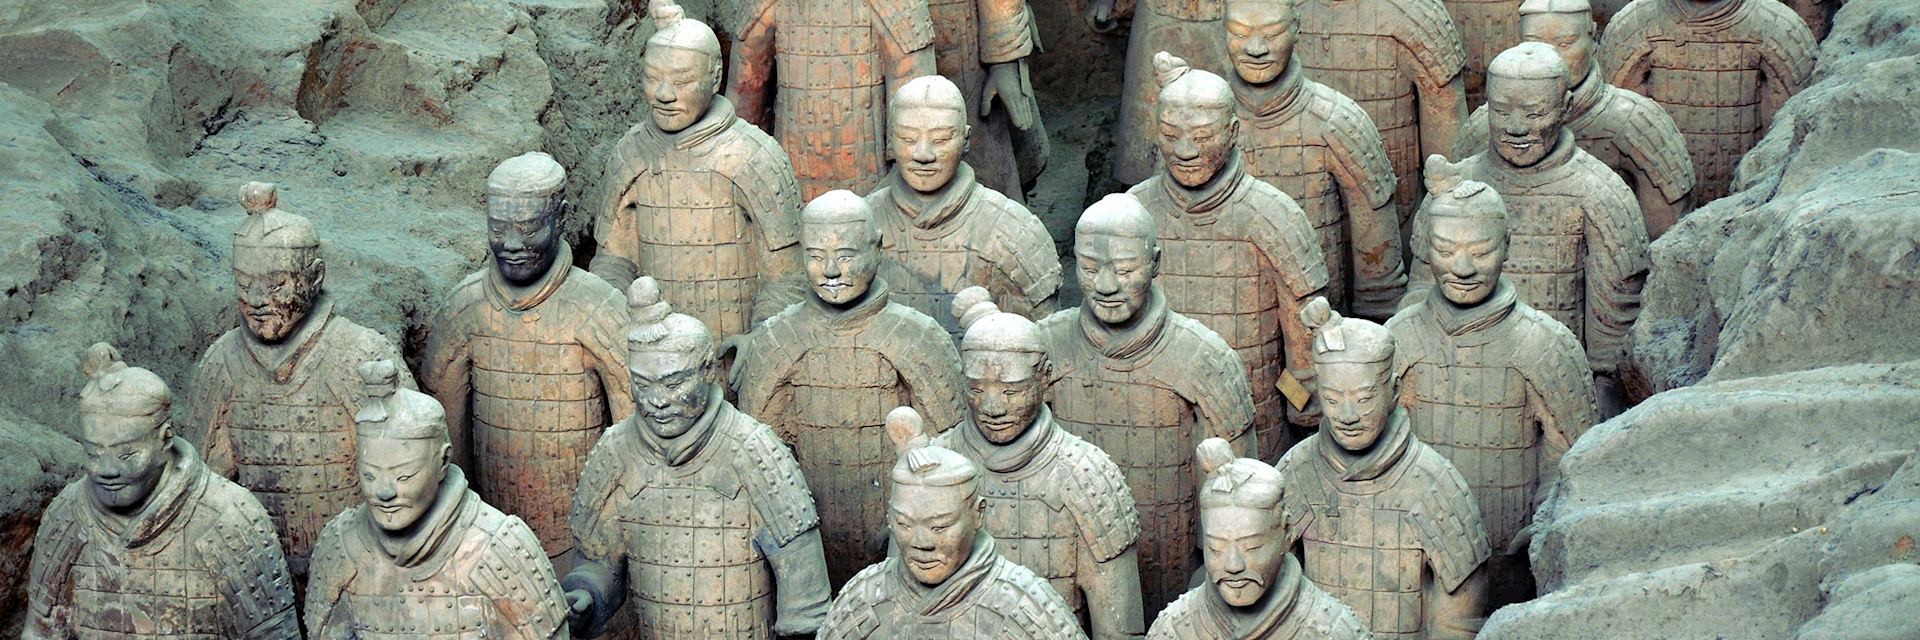 Xi'an's Terracotta Warriors